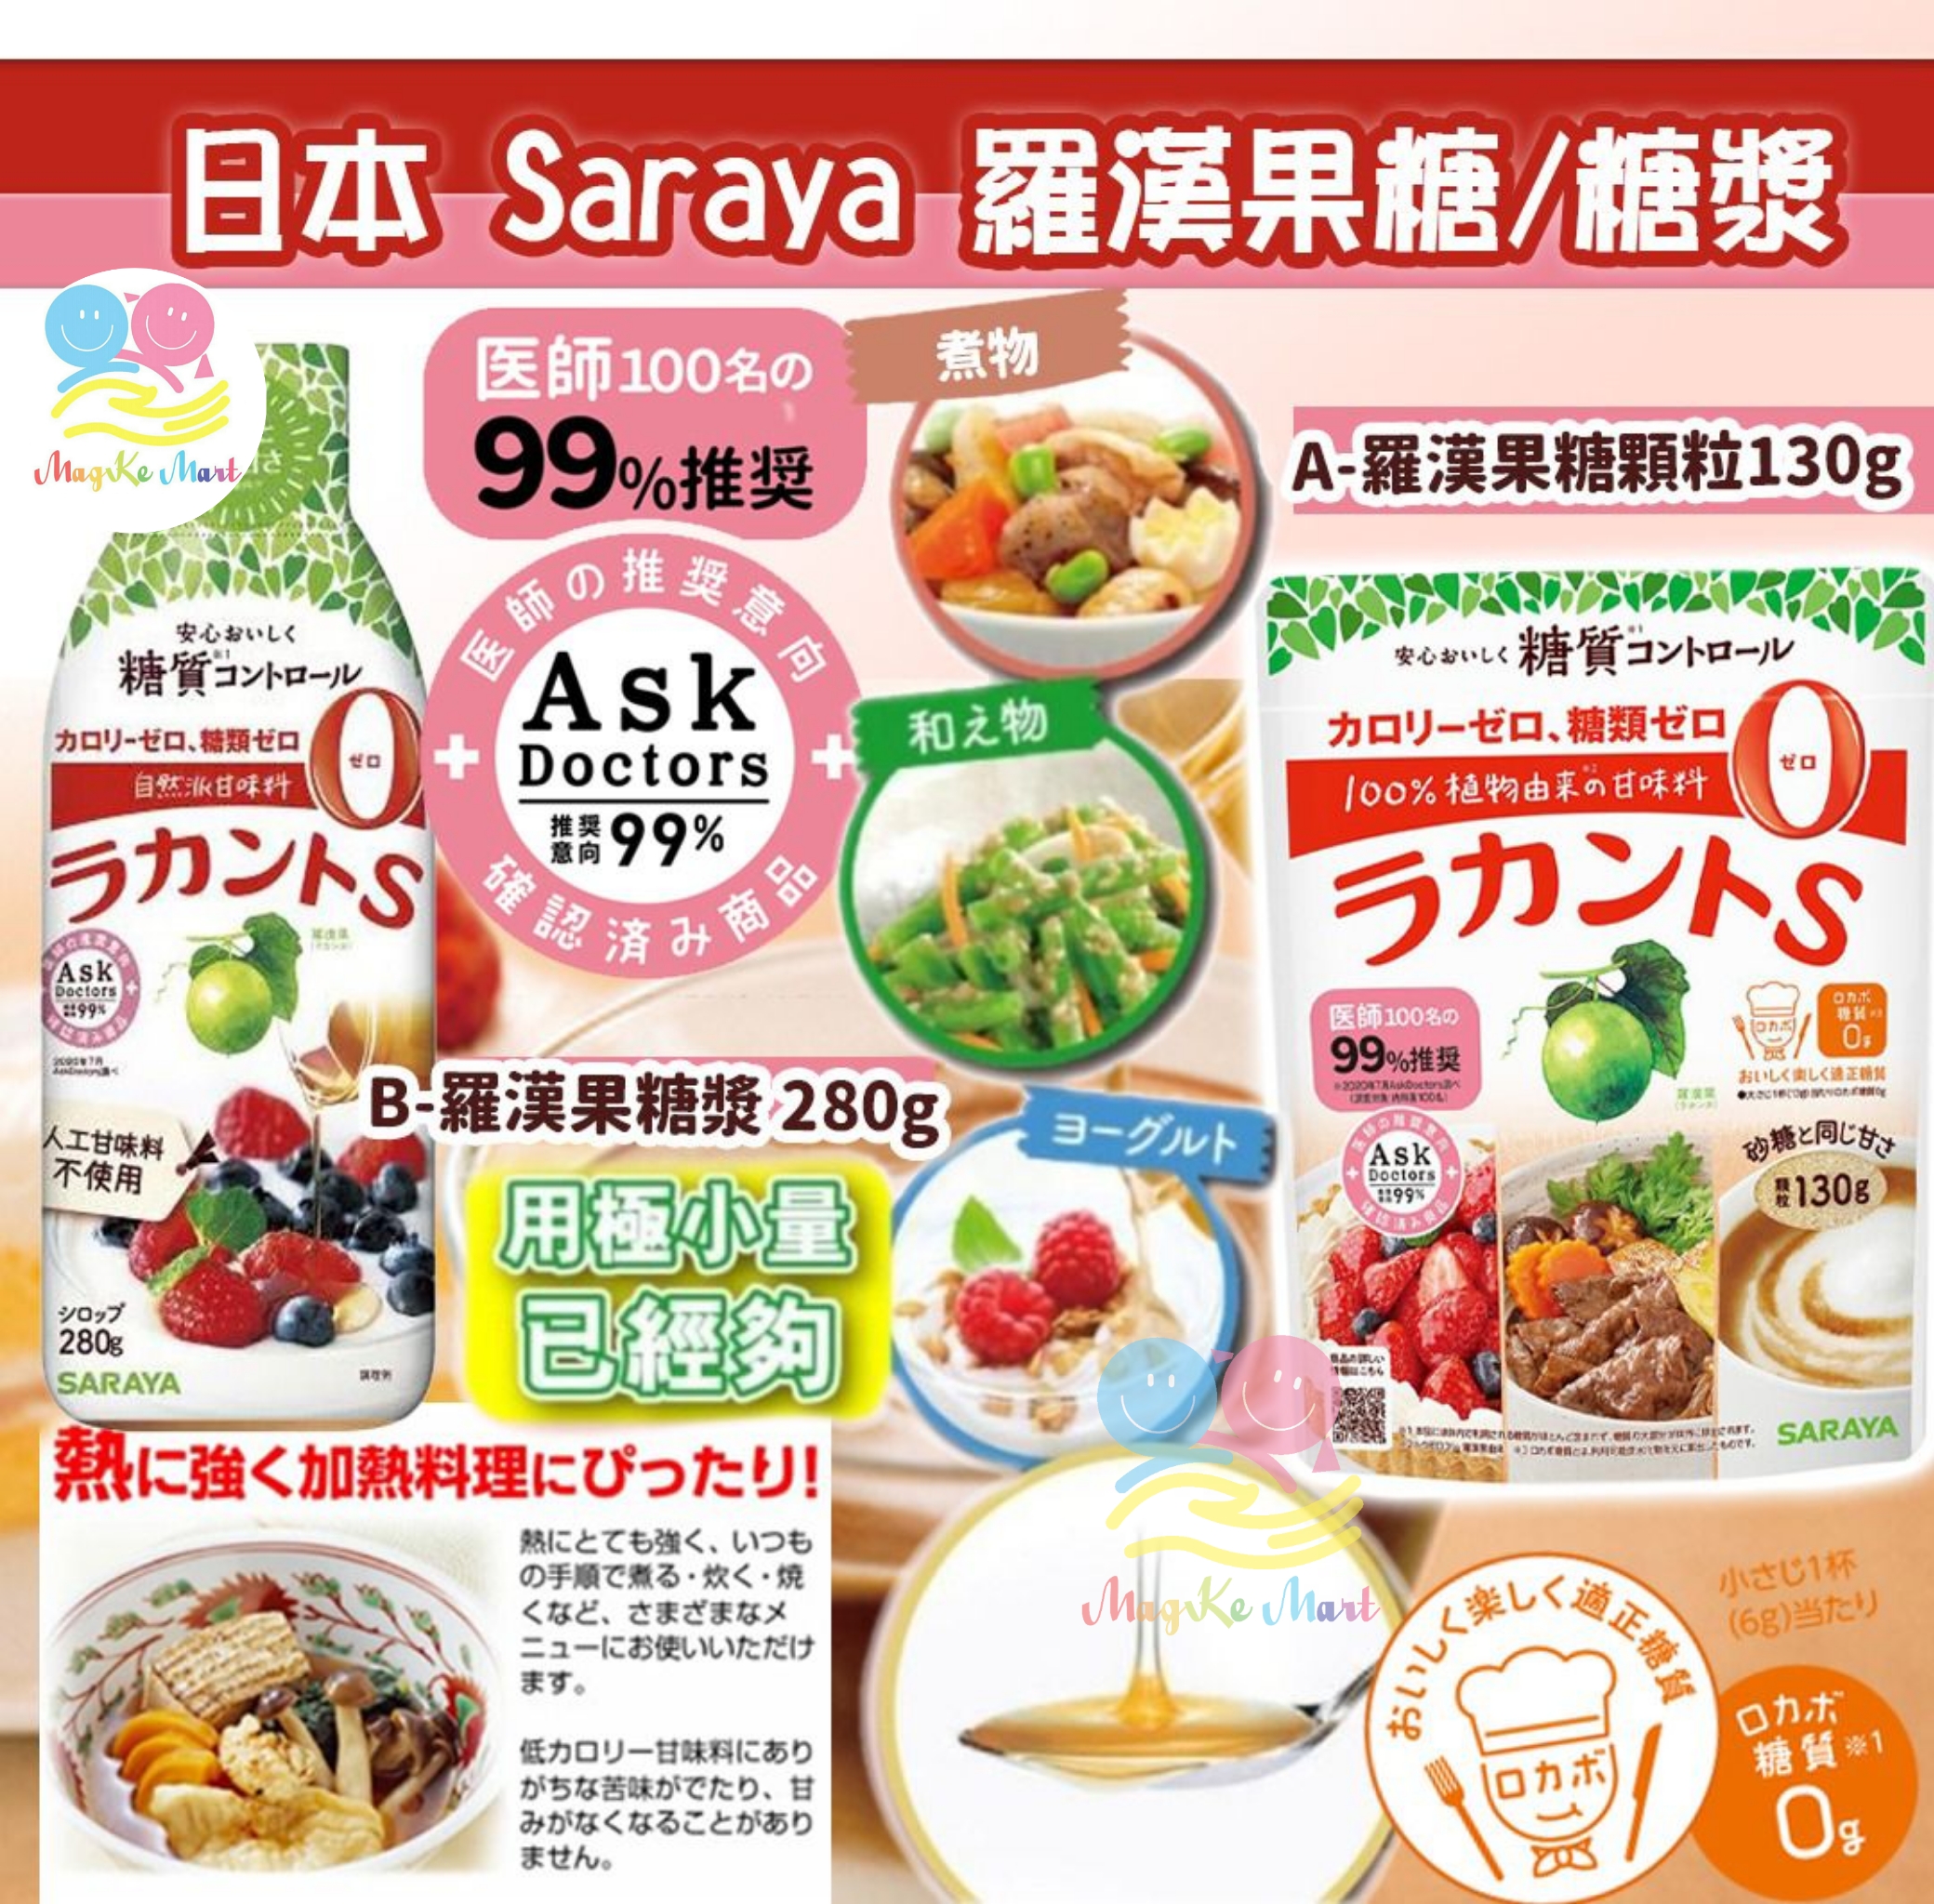 日本 Saraya 羅漢果糖系列 (A) 羅漢果糖顆粒 130g